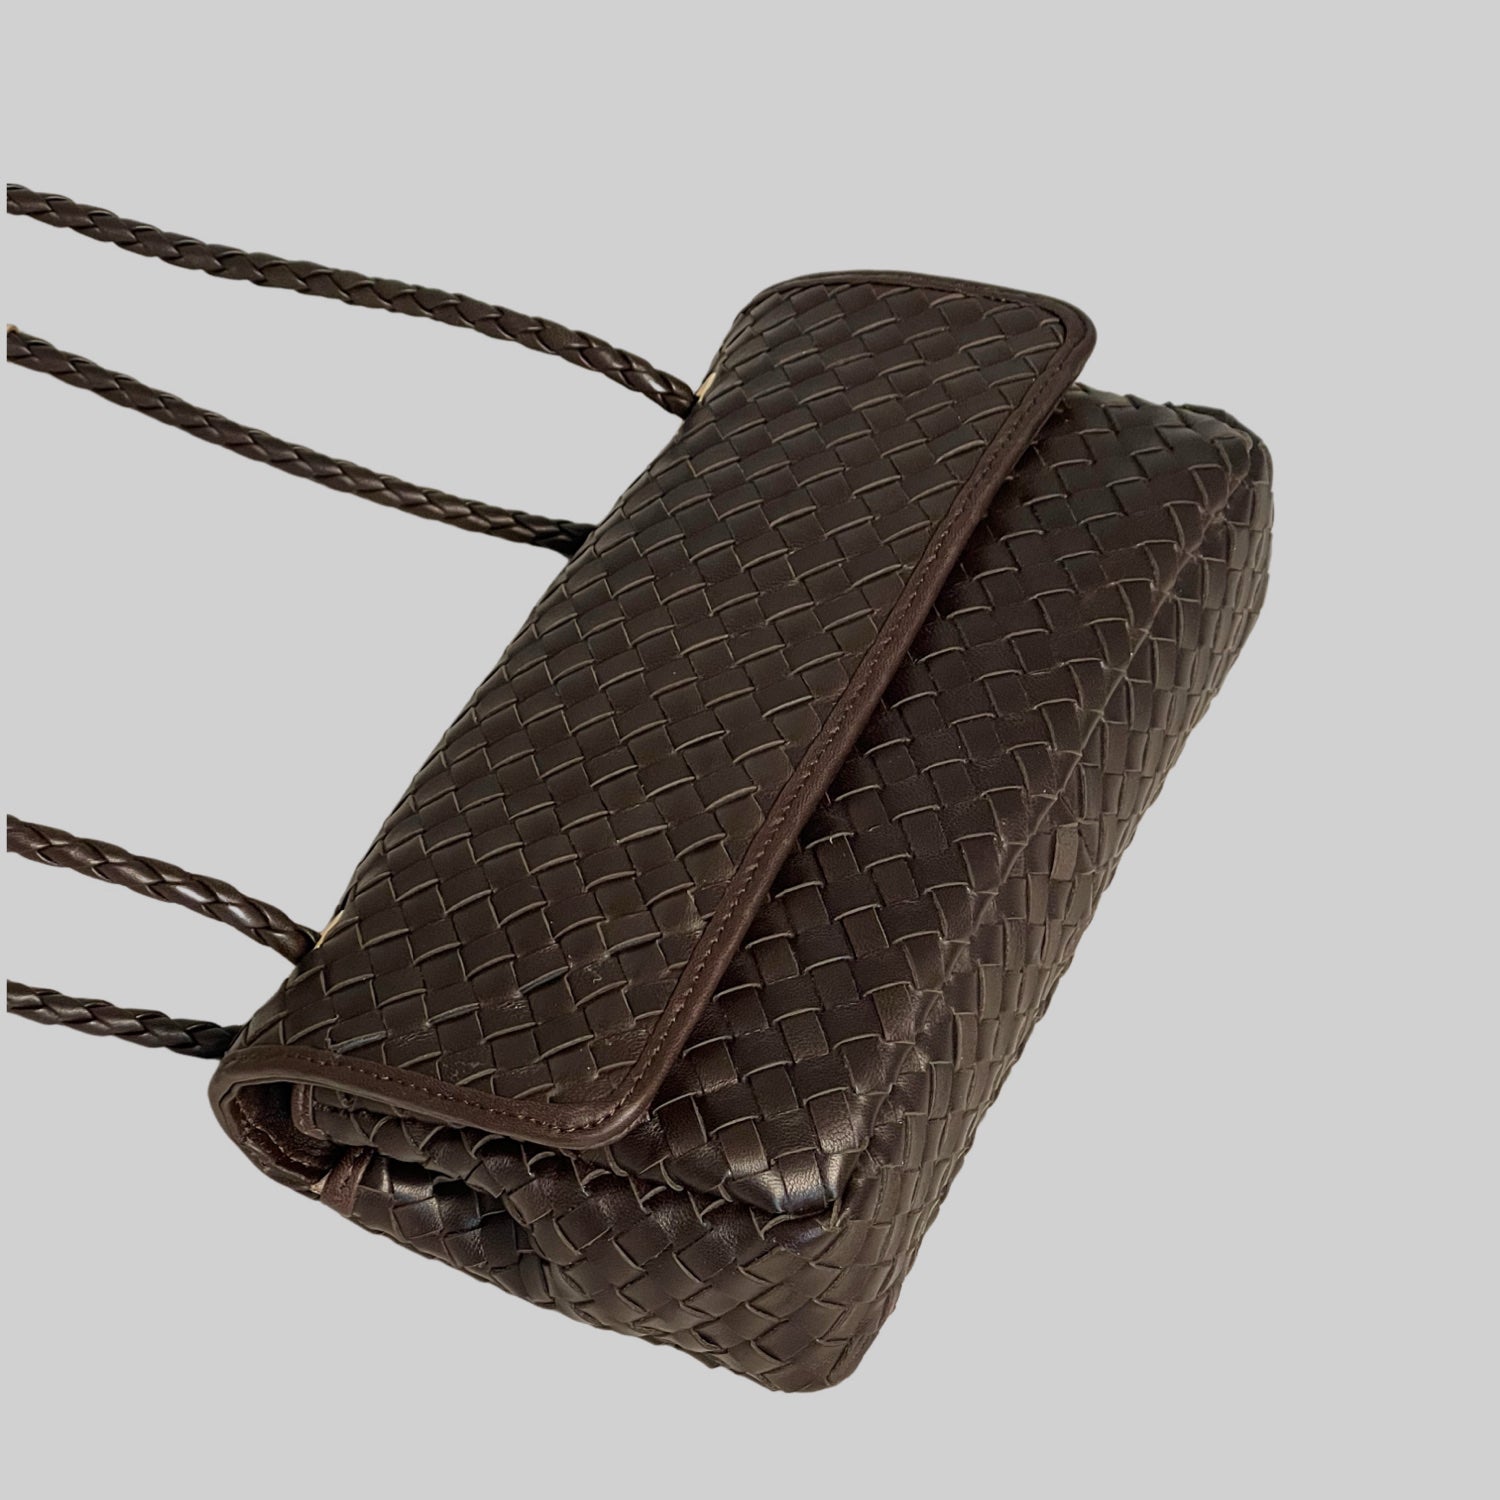 Ribichini Envelope-clutchen i sjokoladebrunt lammeskinn med gull-detaljer. Den justerbare hanken gir fleksibel bærestil, klaffen sikrer trygg oppbevaring.